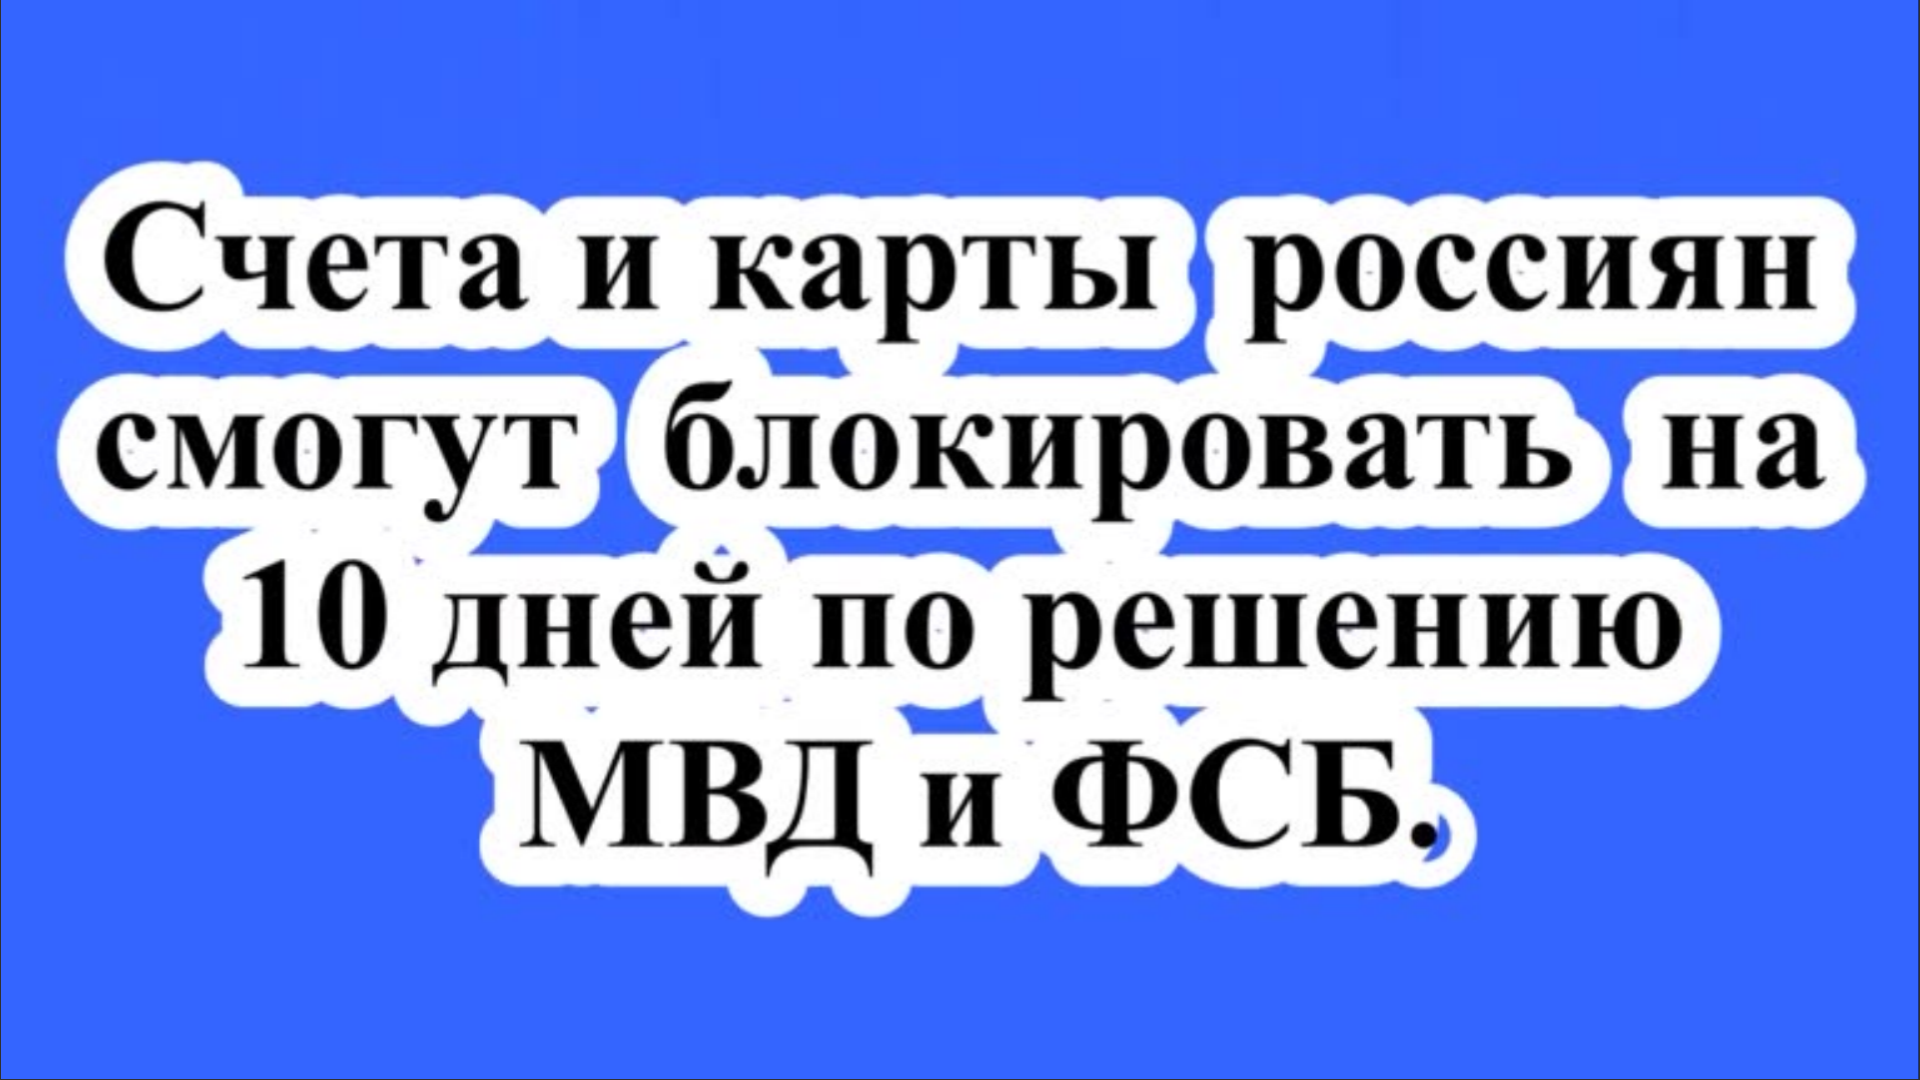 Счета и карты россиян смогут блокировать на 10 дней по решению МВД и ФСБ.